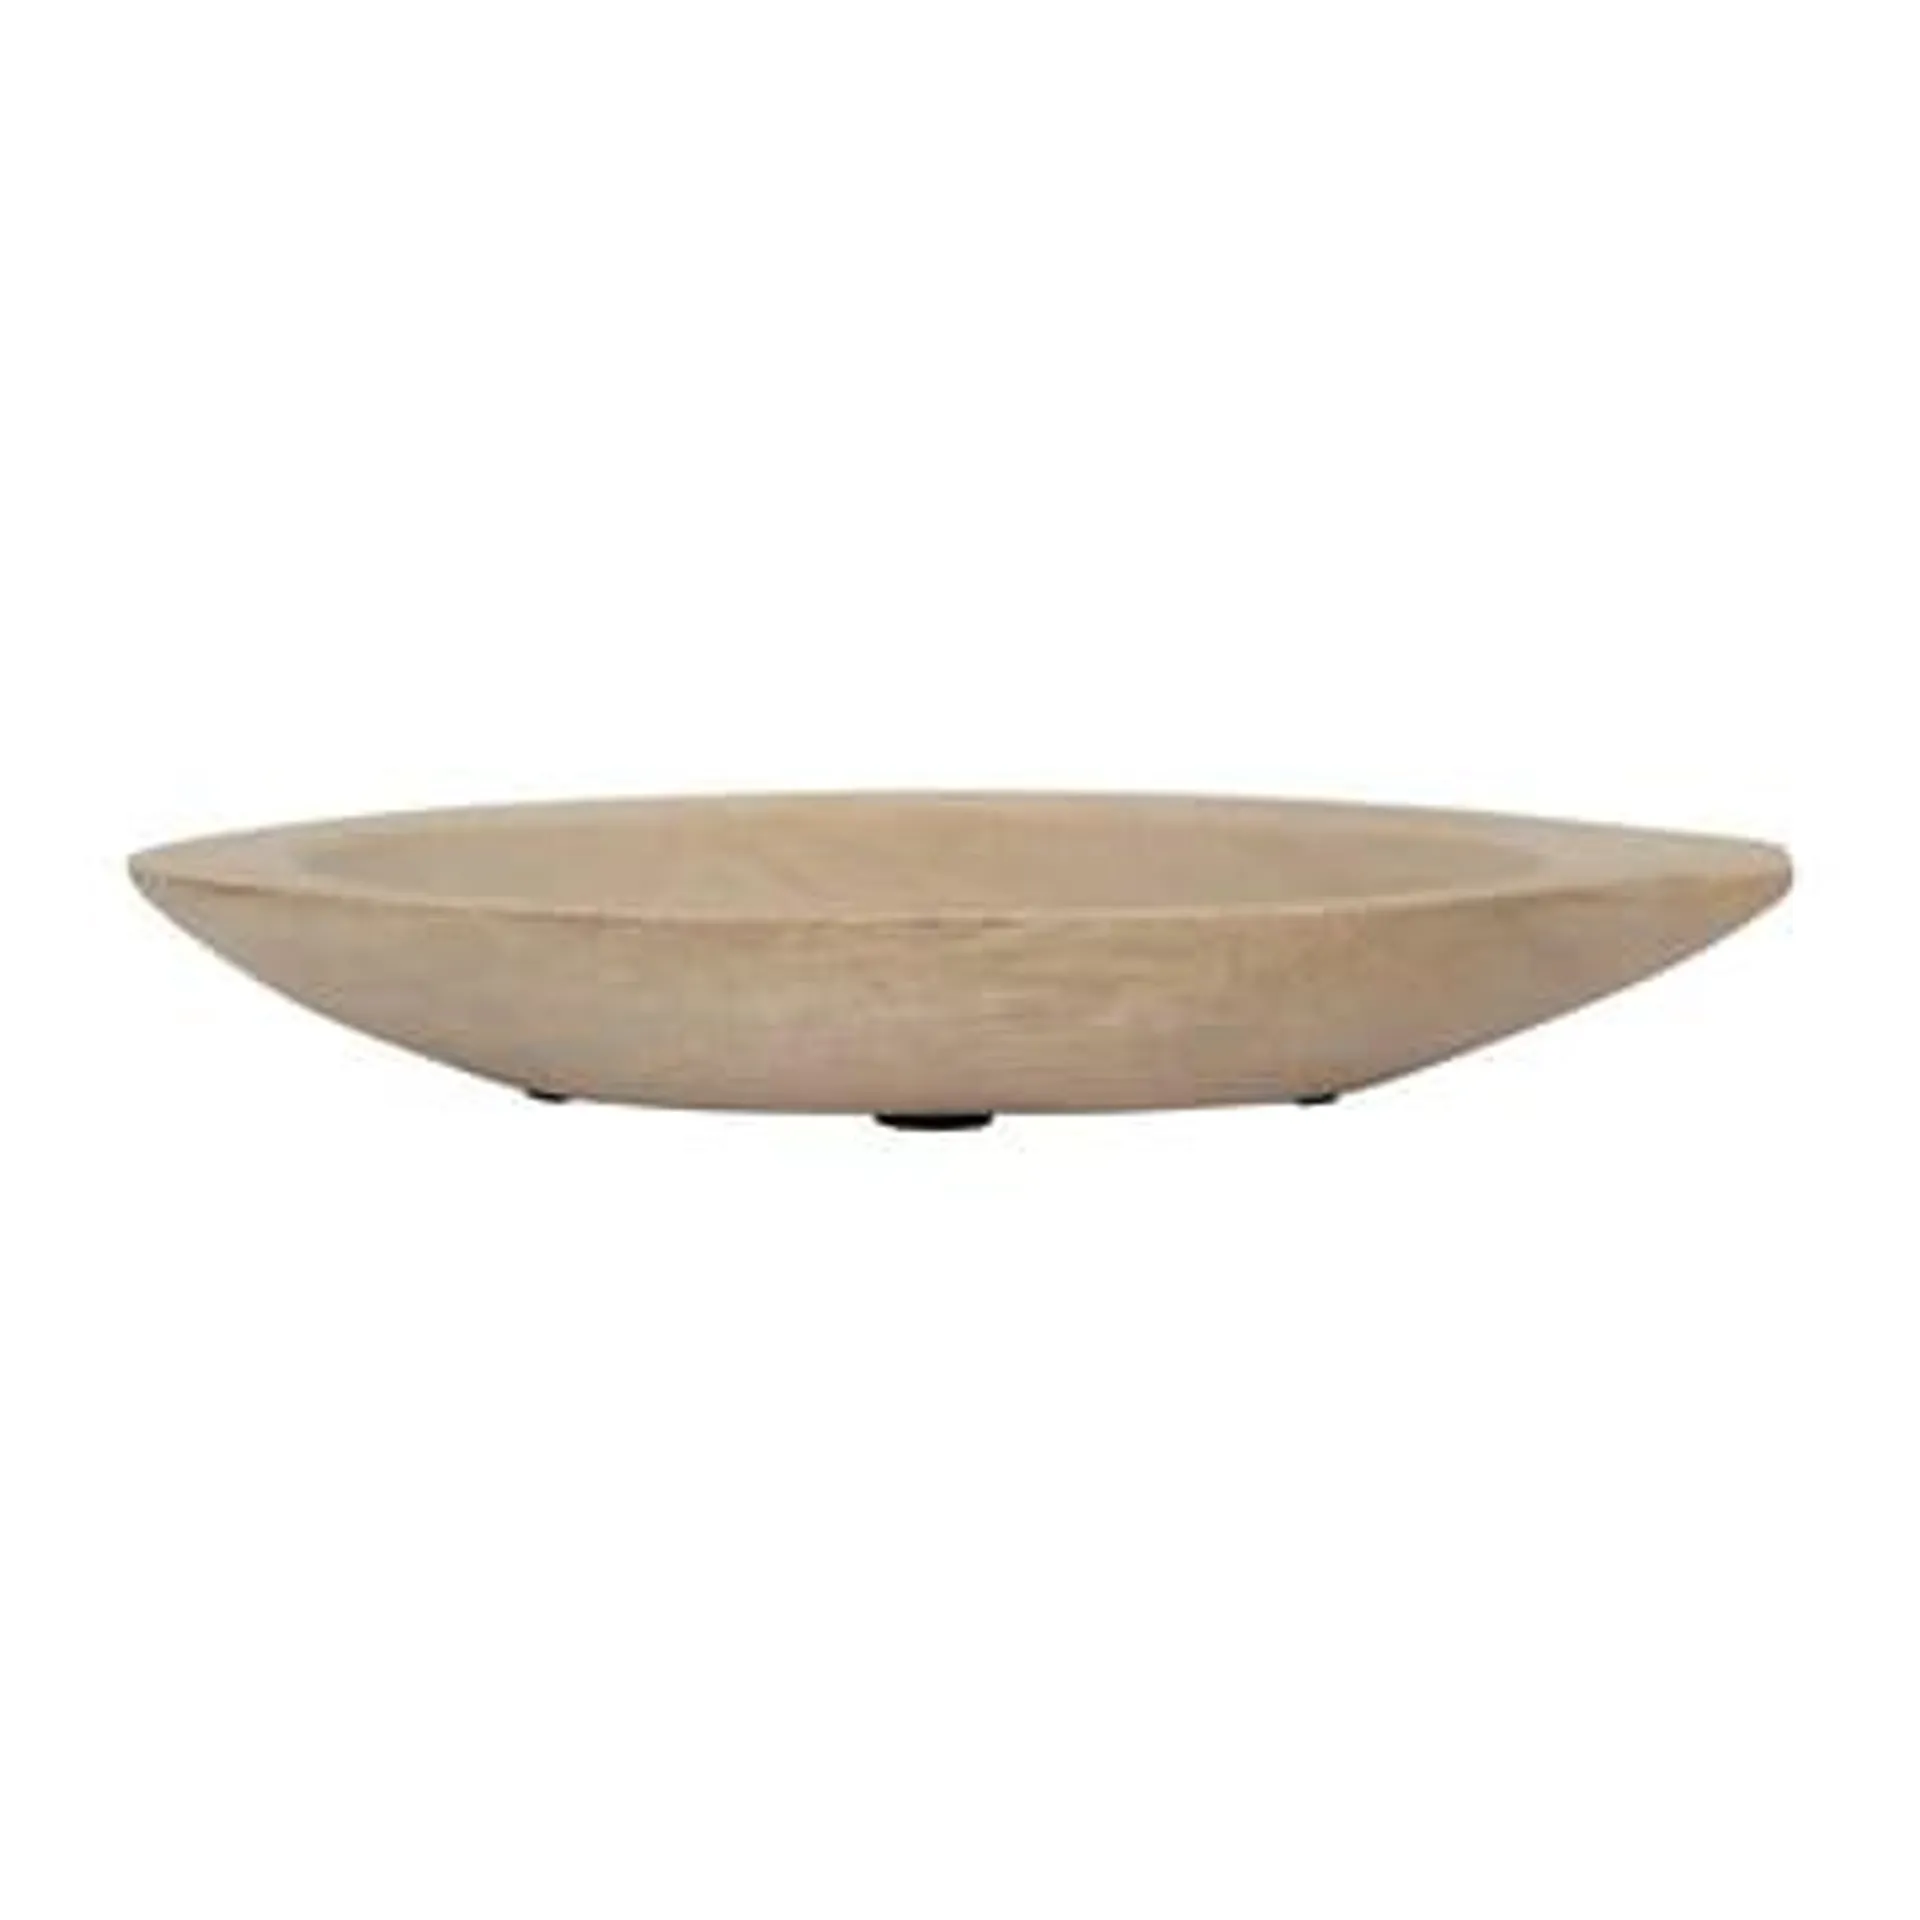 Pesce bowl Ø18 cm